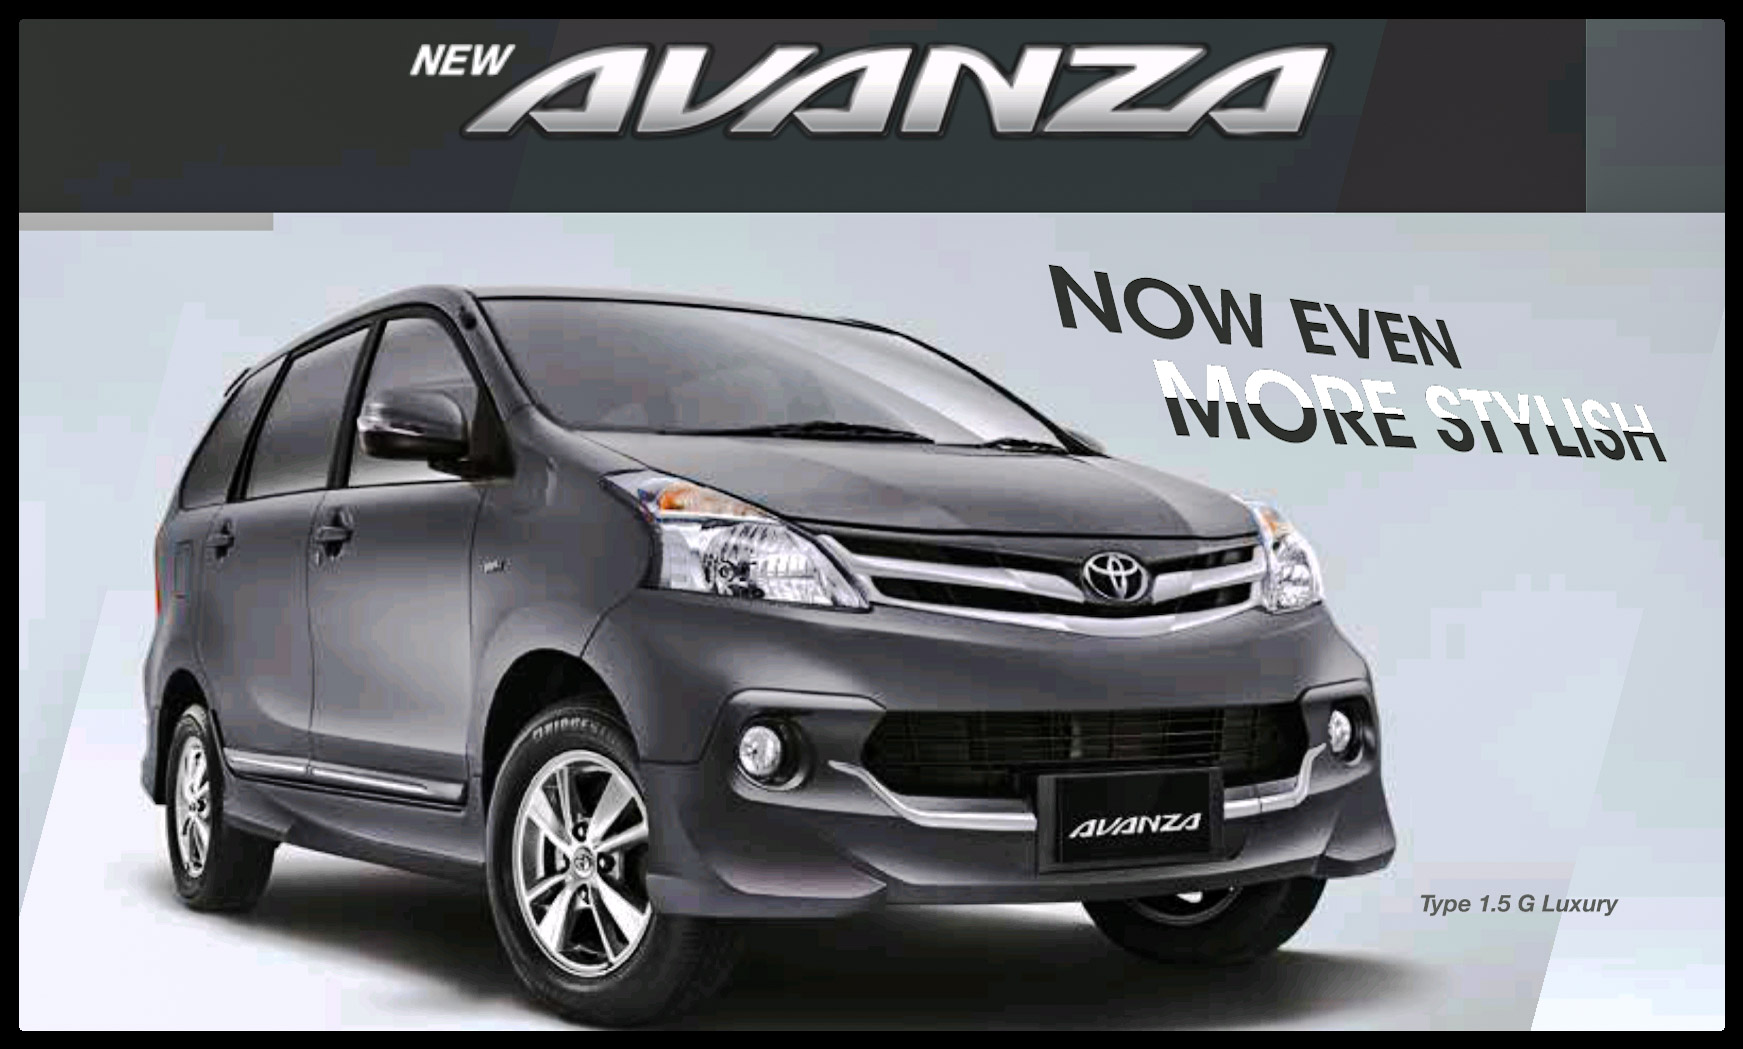 New Avanza Luxury Now Even More Stylist ToyotaMakassarorg